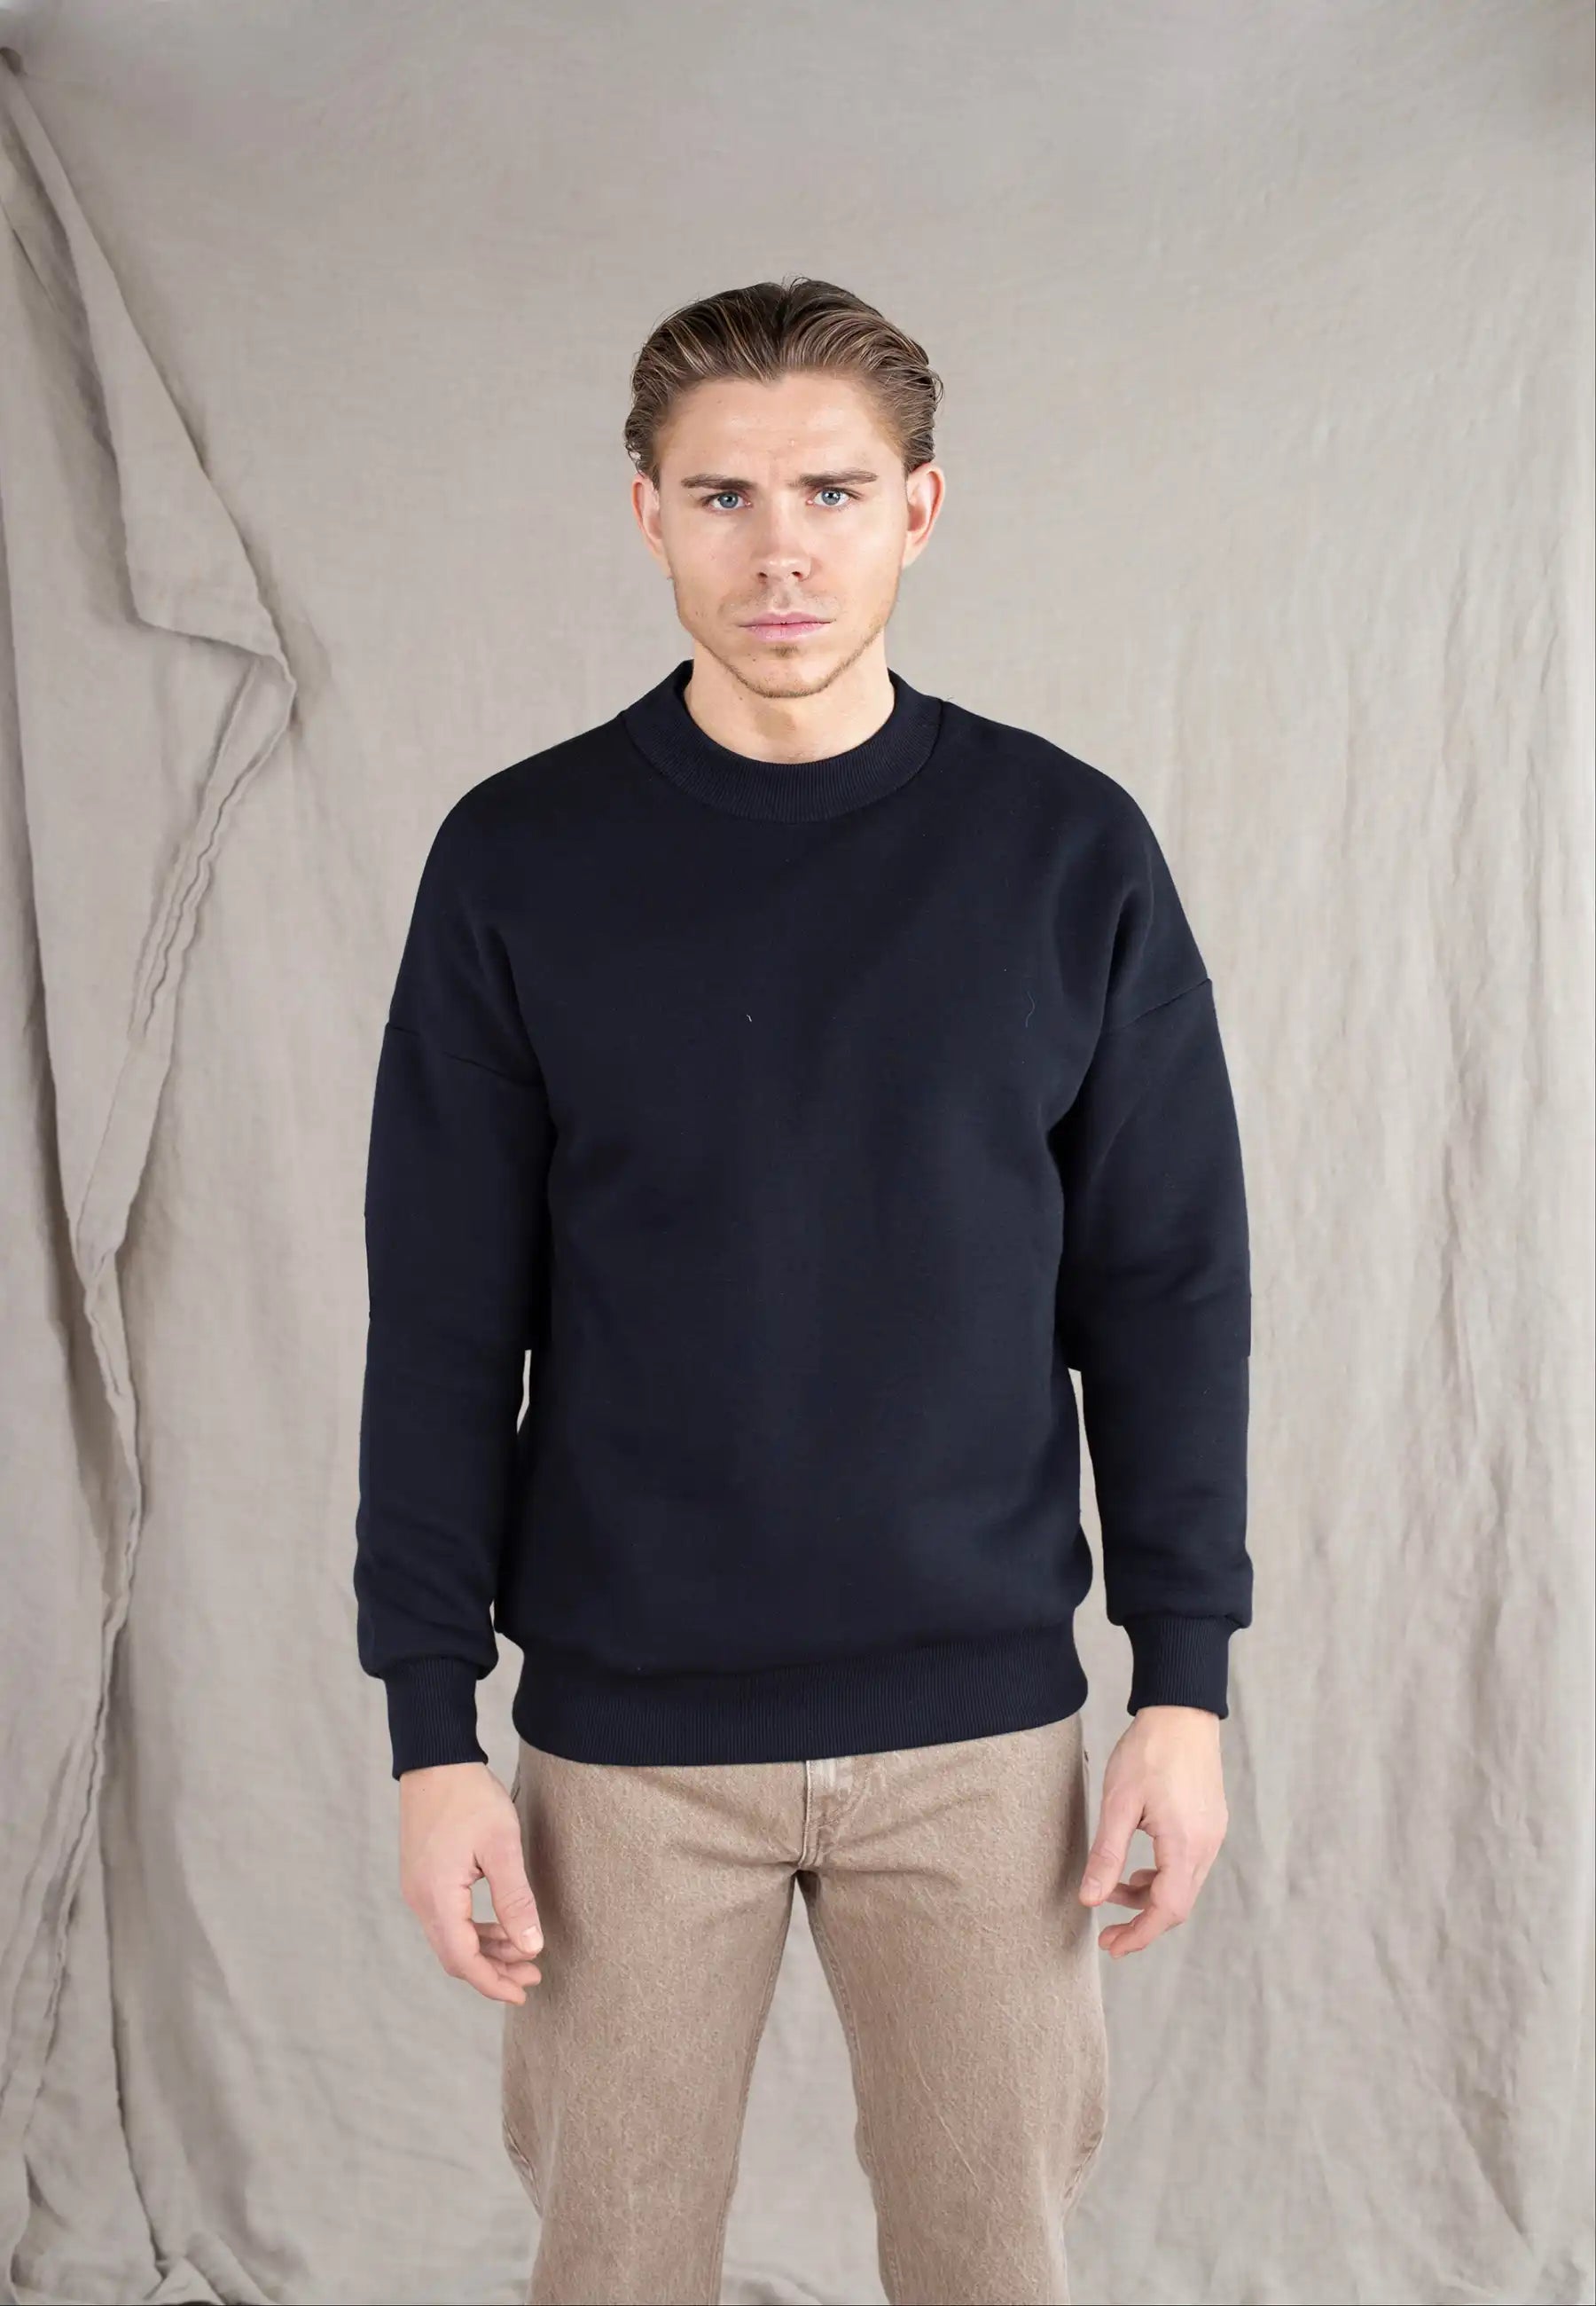 Ellipse: Sweater back emblem – Black